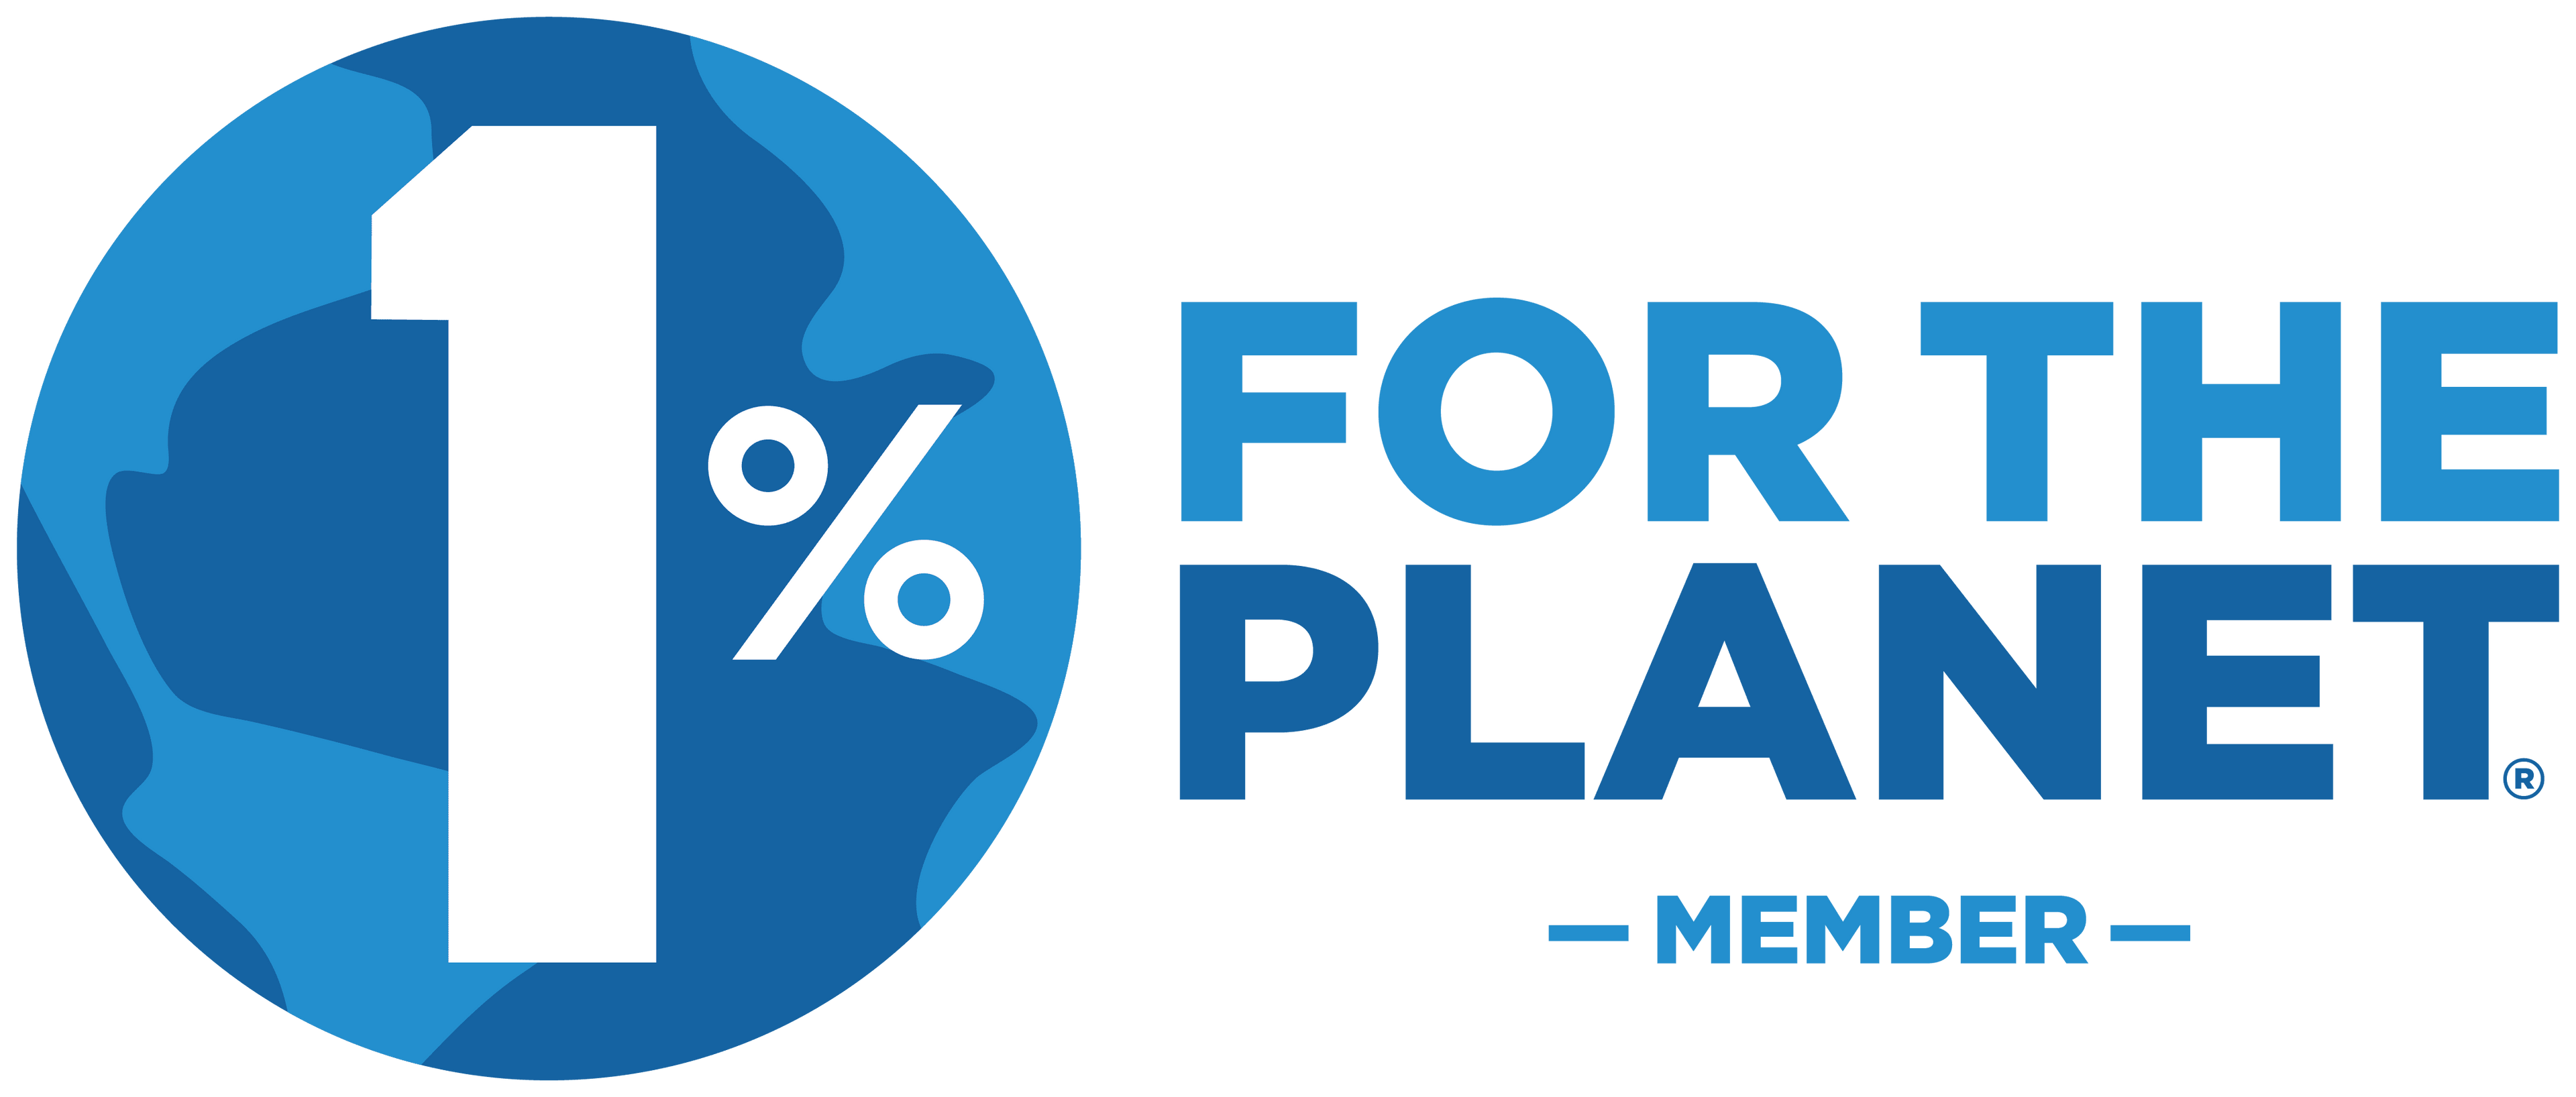 1% For The Planet Member logo.